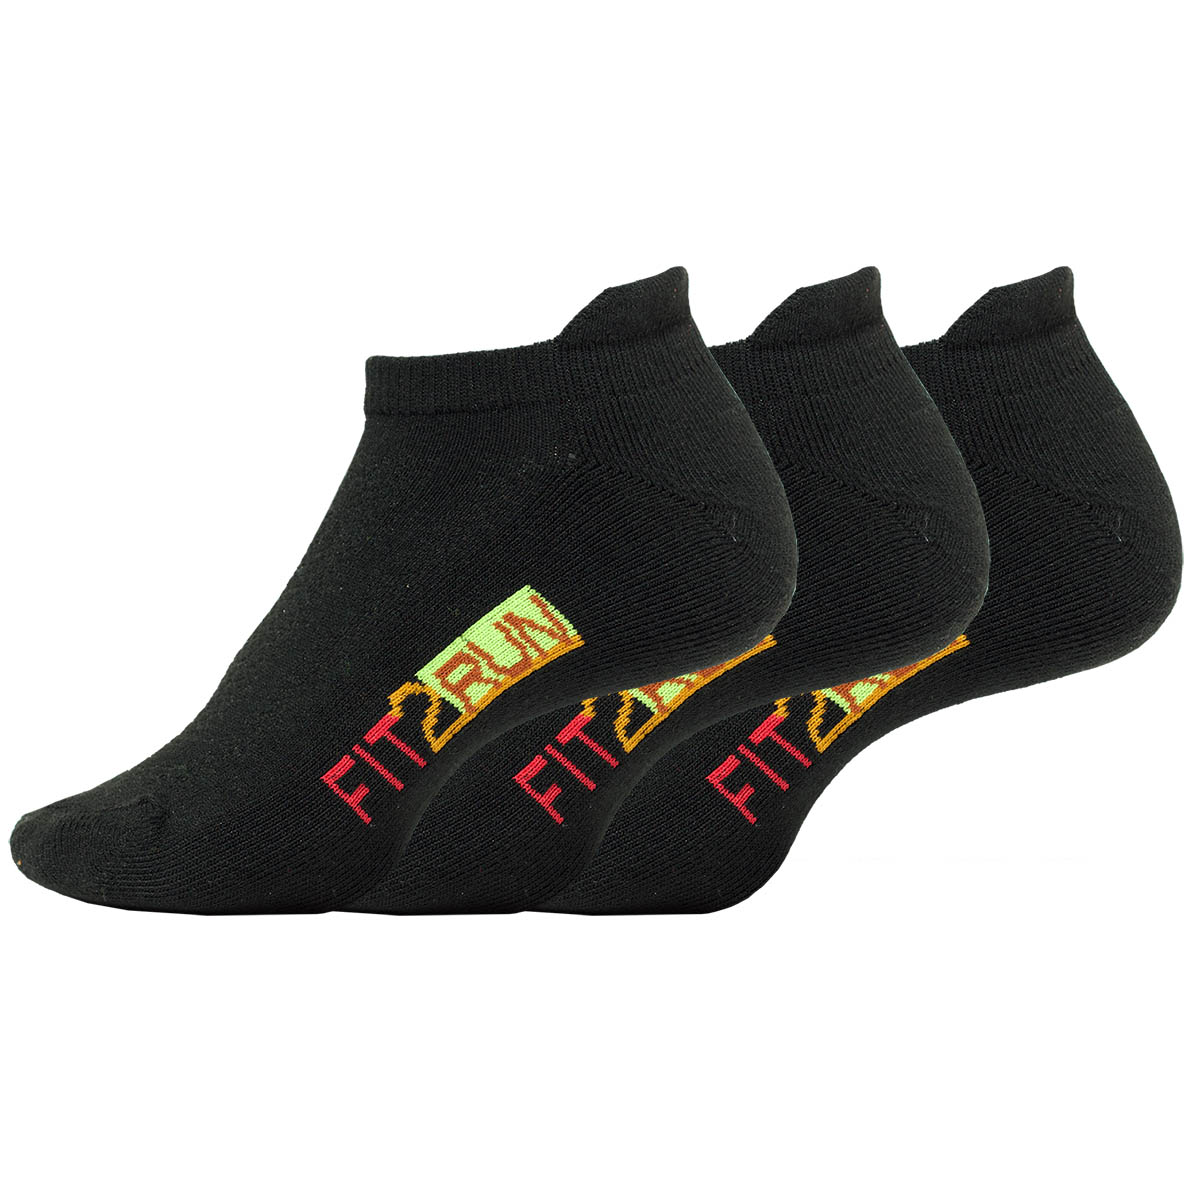 Fit2Run Mesh Top 3pk Socks, , large image number null